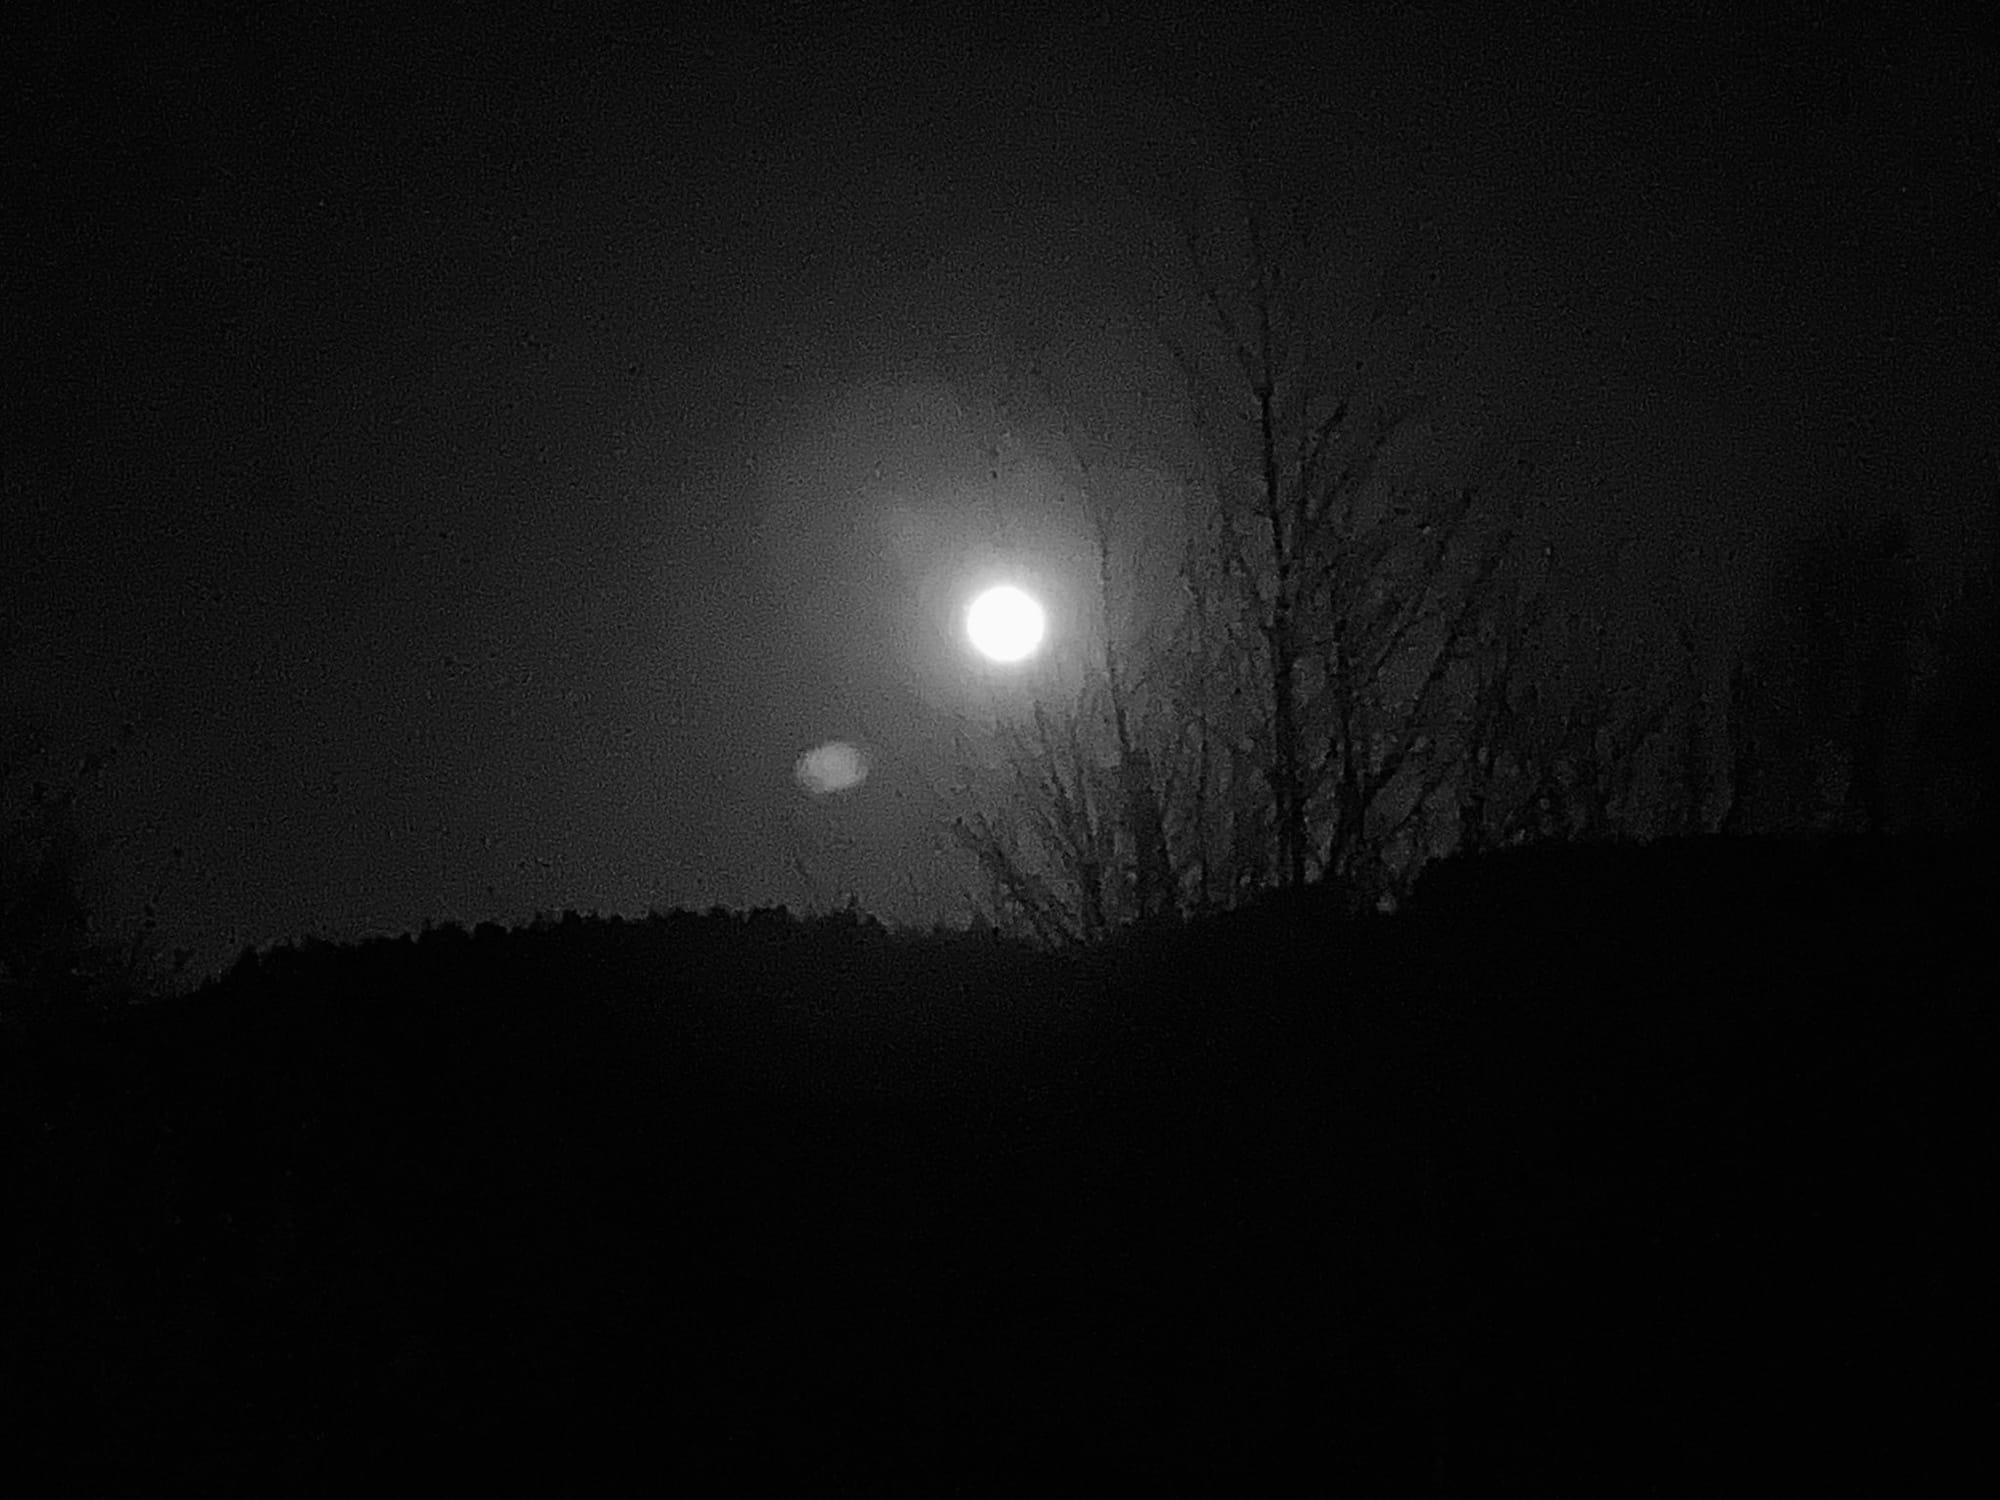 Ein schöner Nachtmond scheint durch Baumwipfel, das Foto ist schwarz-weiß und sehr düster.